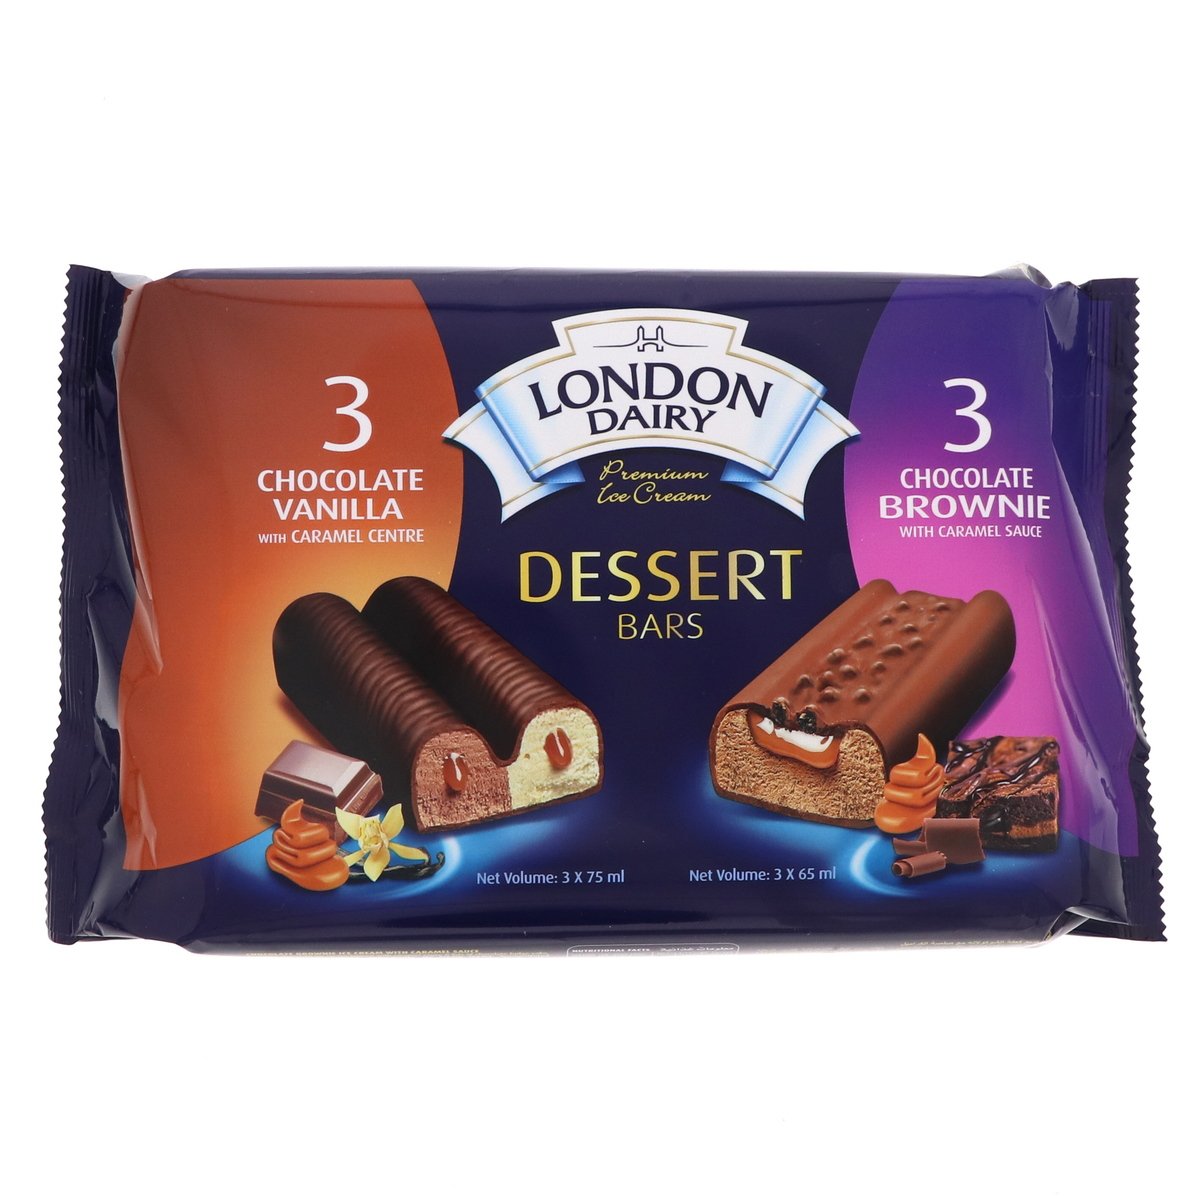 London Dairy Dessert Bars Chocolate Vanilla 3 x 75 ml + Chocolate Brownie 3 x 65 ml